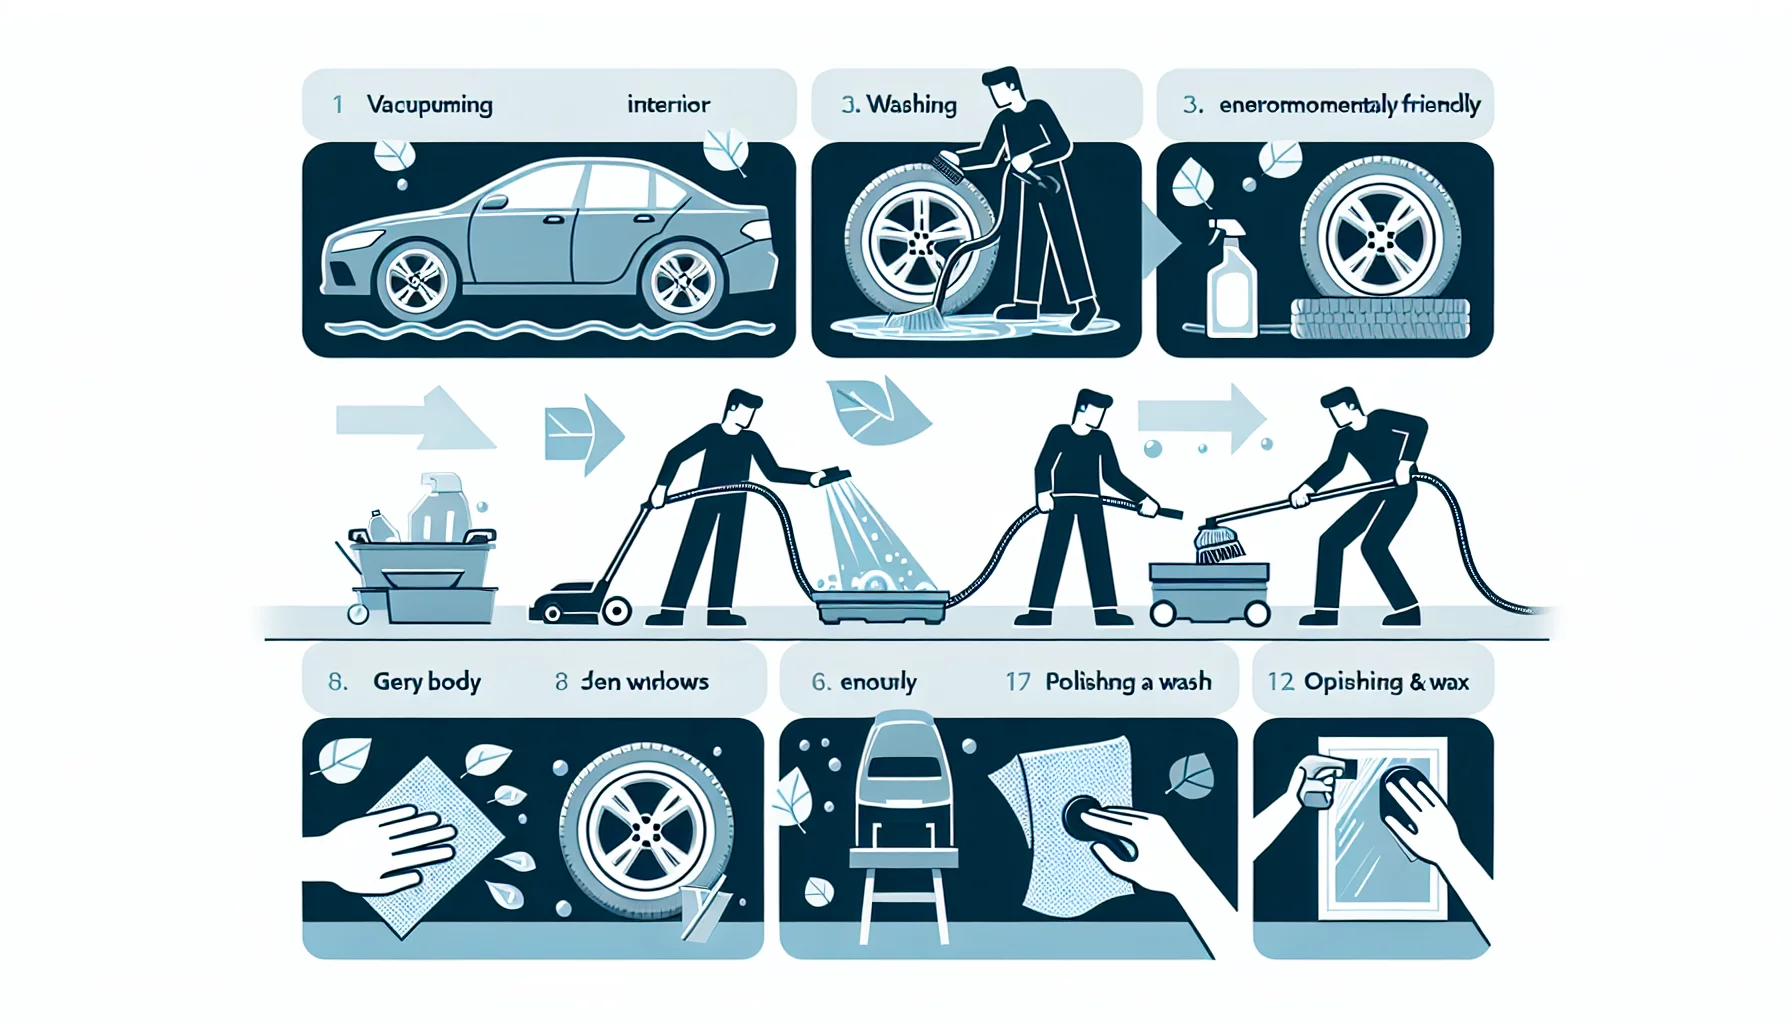 Comment faire un nettoyage efficace de votre voiture
